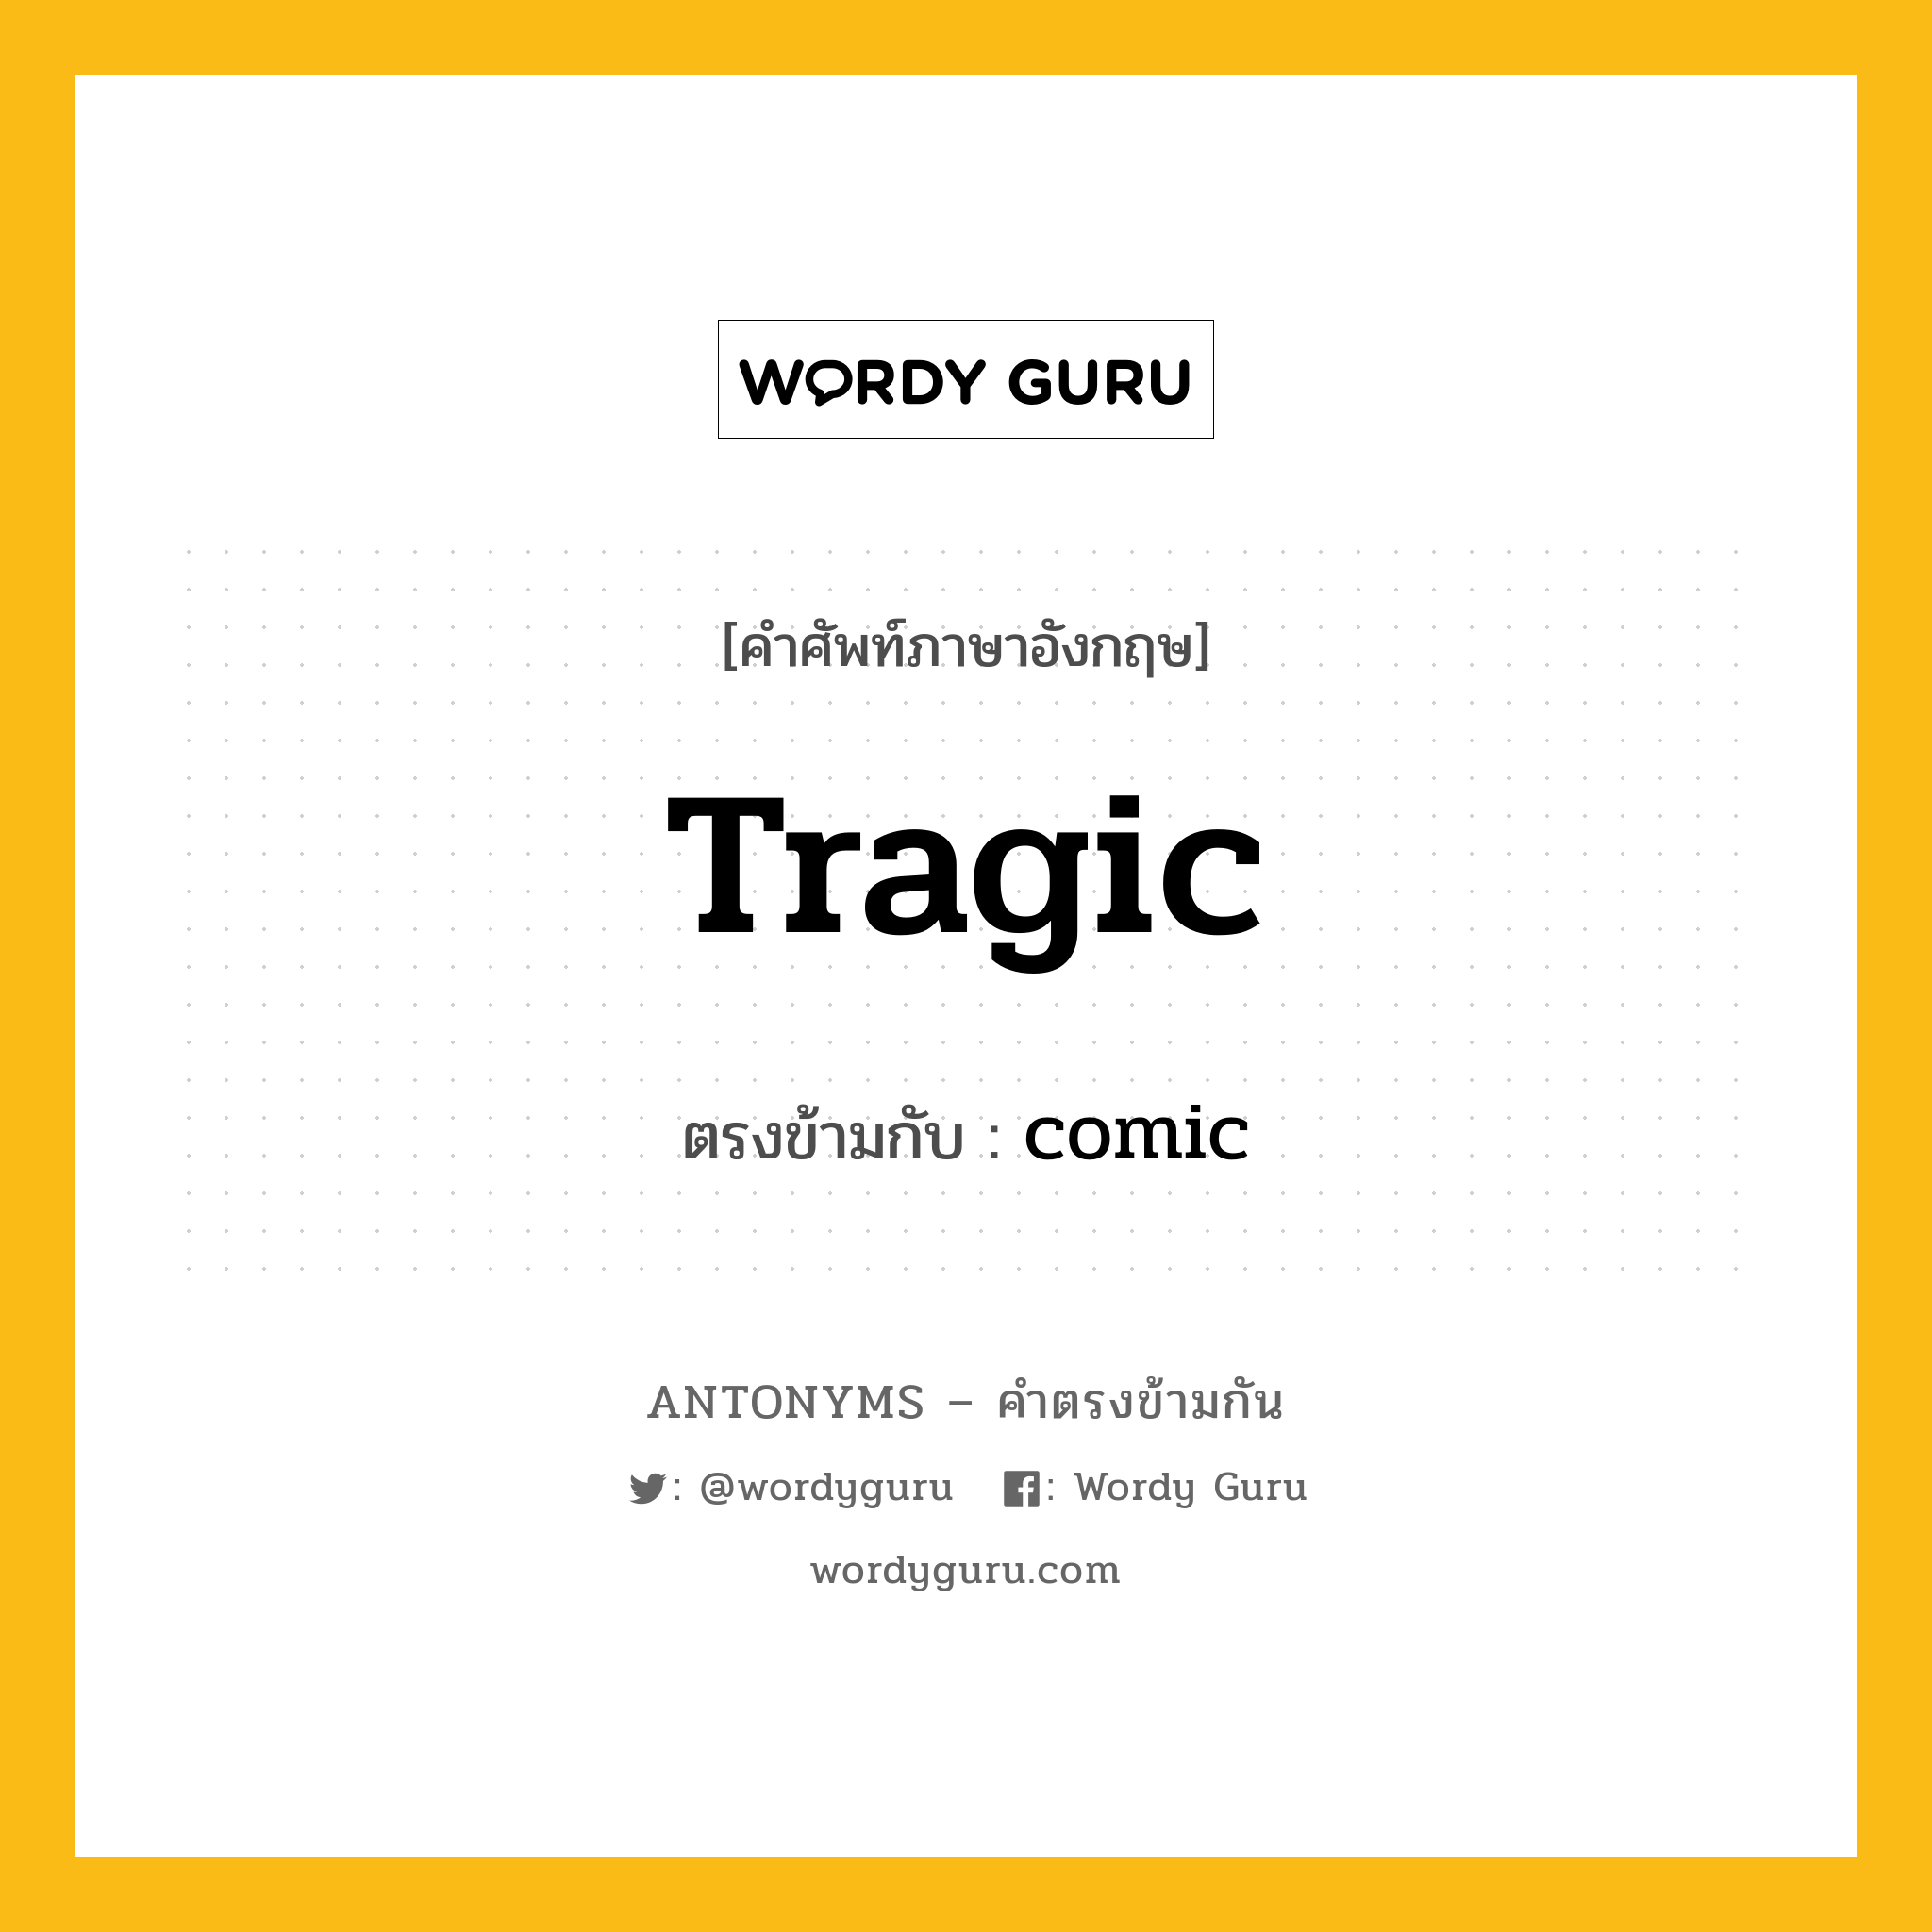 tragic เป็นคำตรงข้ามกับคำไหนบ้าง?, คำศัพท์ภาษาอังกฤษ tragic ตรงข้ามกับ comic หมวด comic